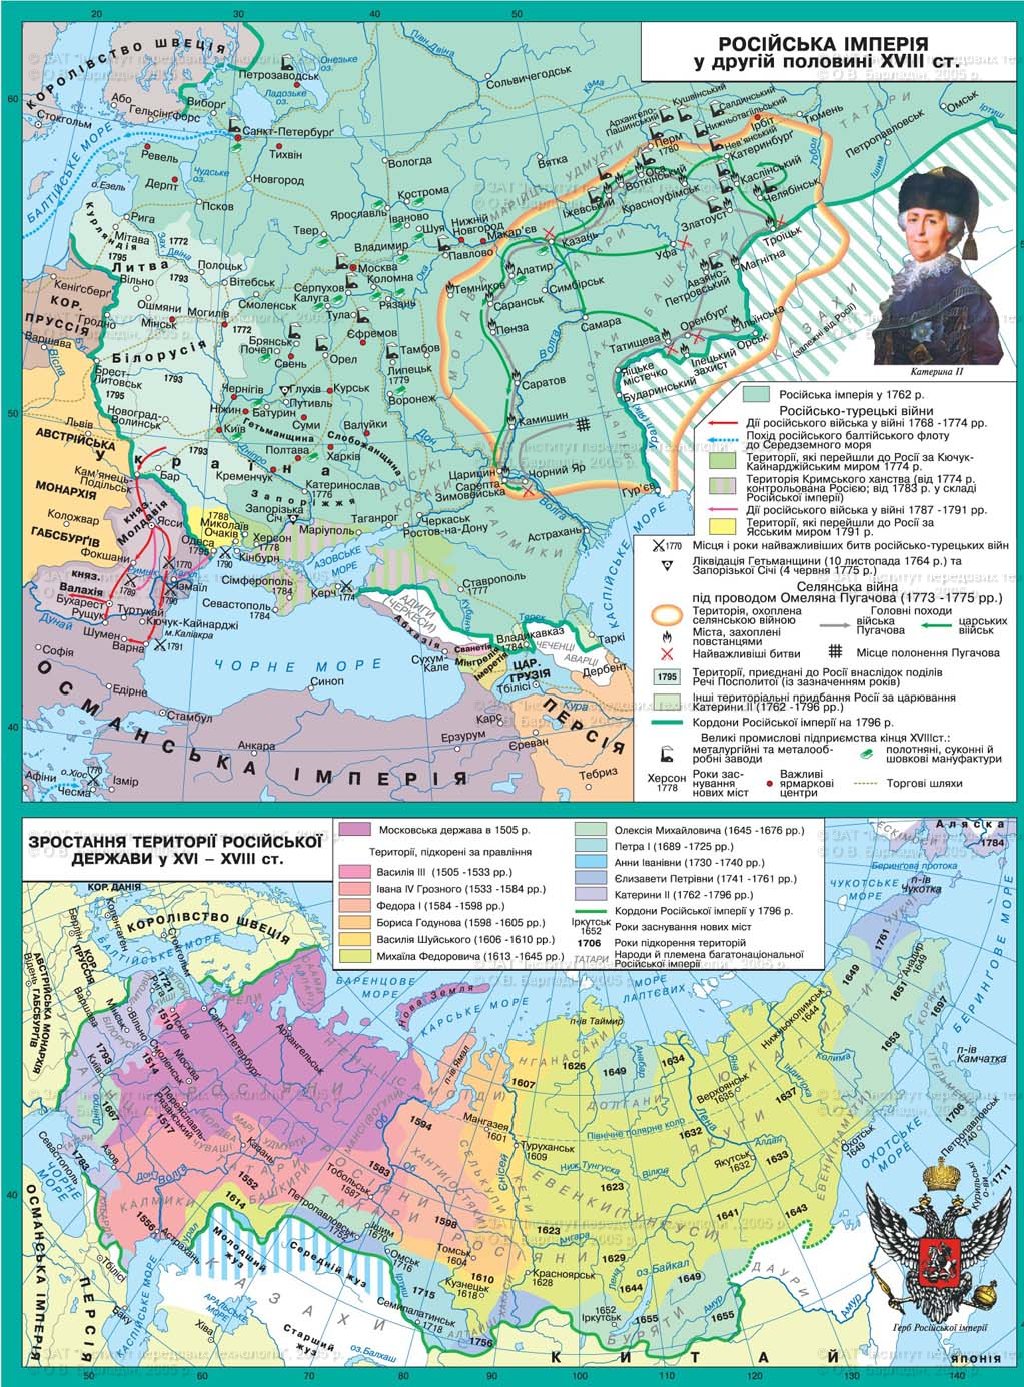 Русское государство в конце XVII - XVIII в.